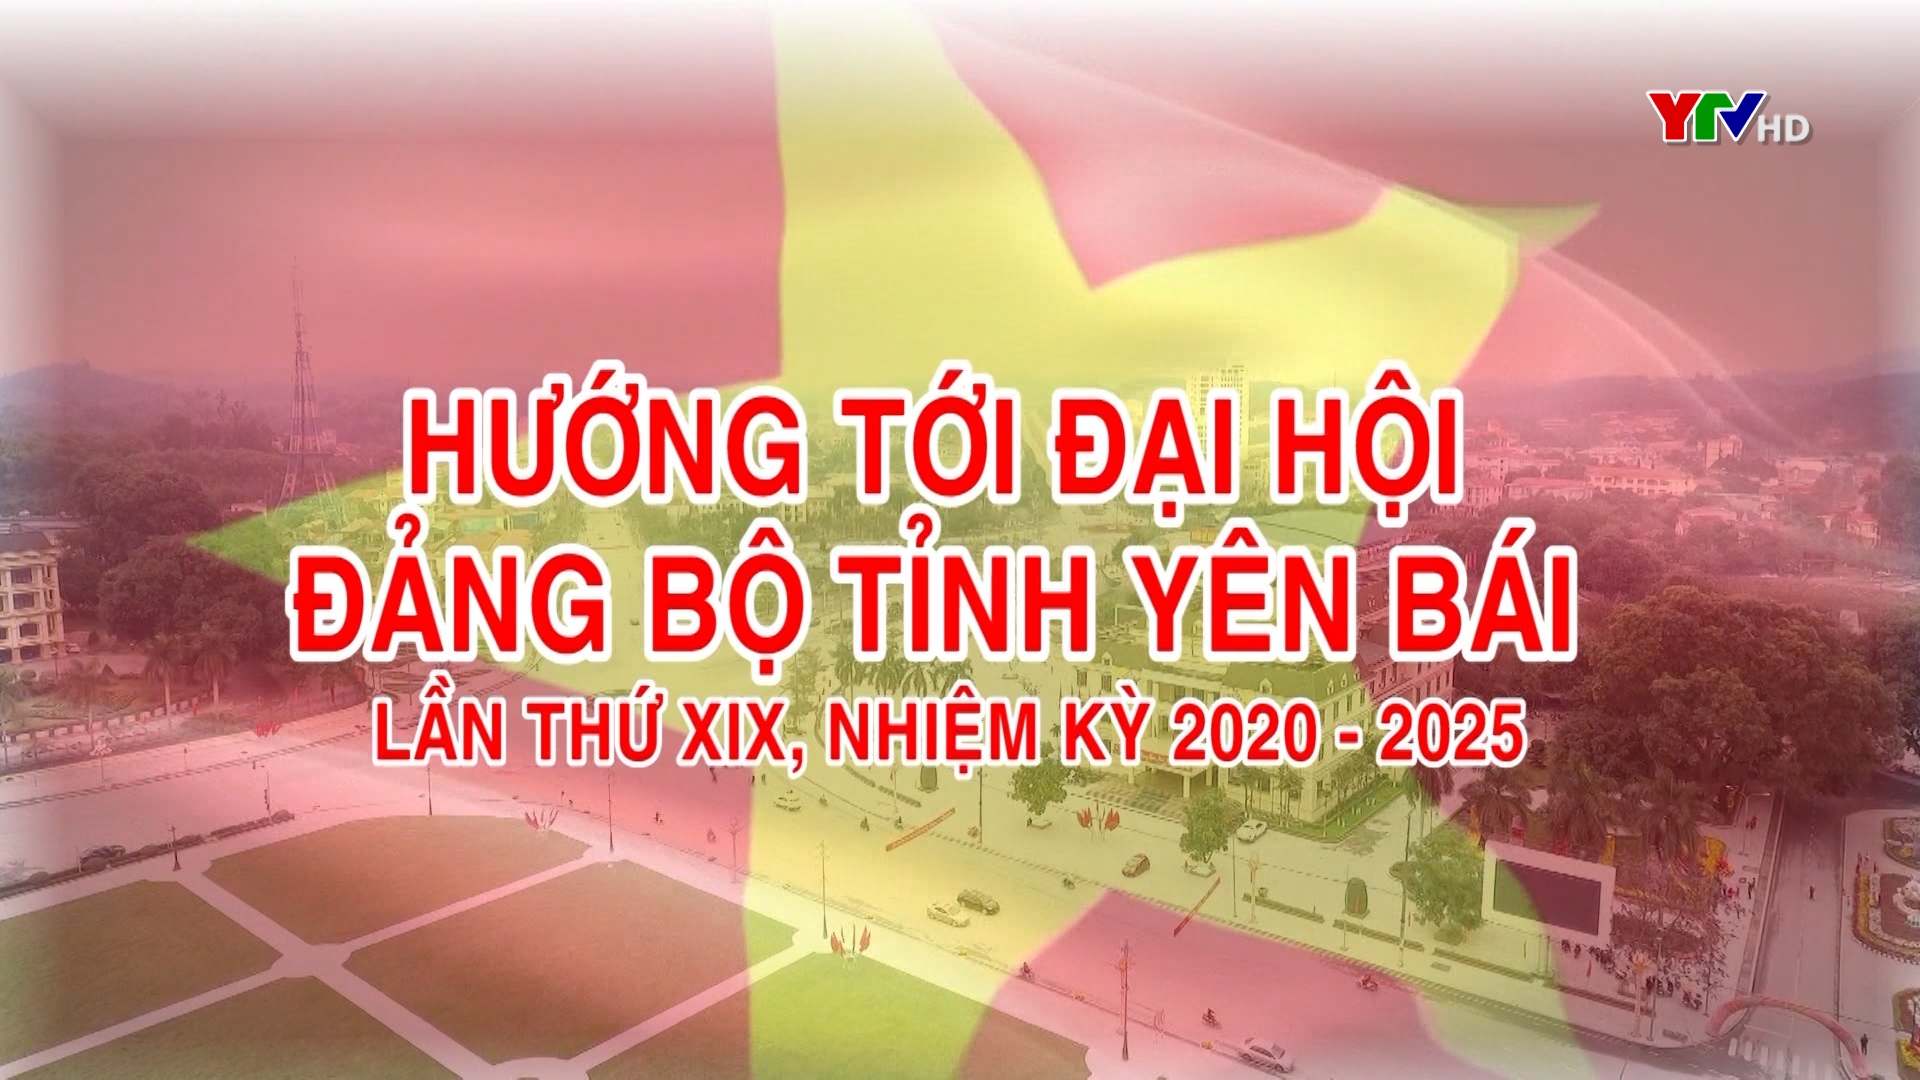 Tuổi trẻ Yên Bái đóng góp ý kiến vào Dự thảo Báo cáo chính trị trình Đại hội XIX Đảng bộ tỉnh